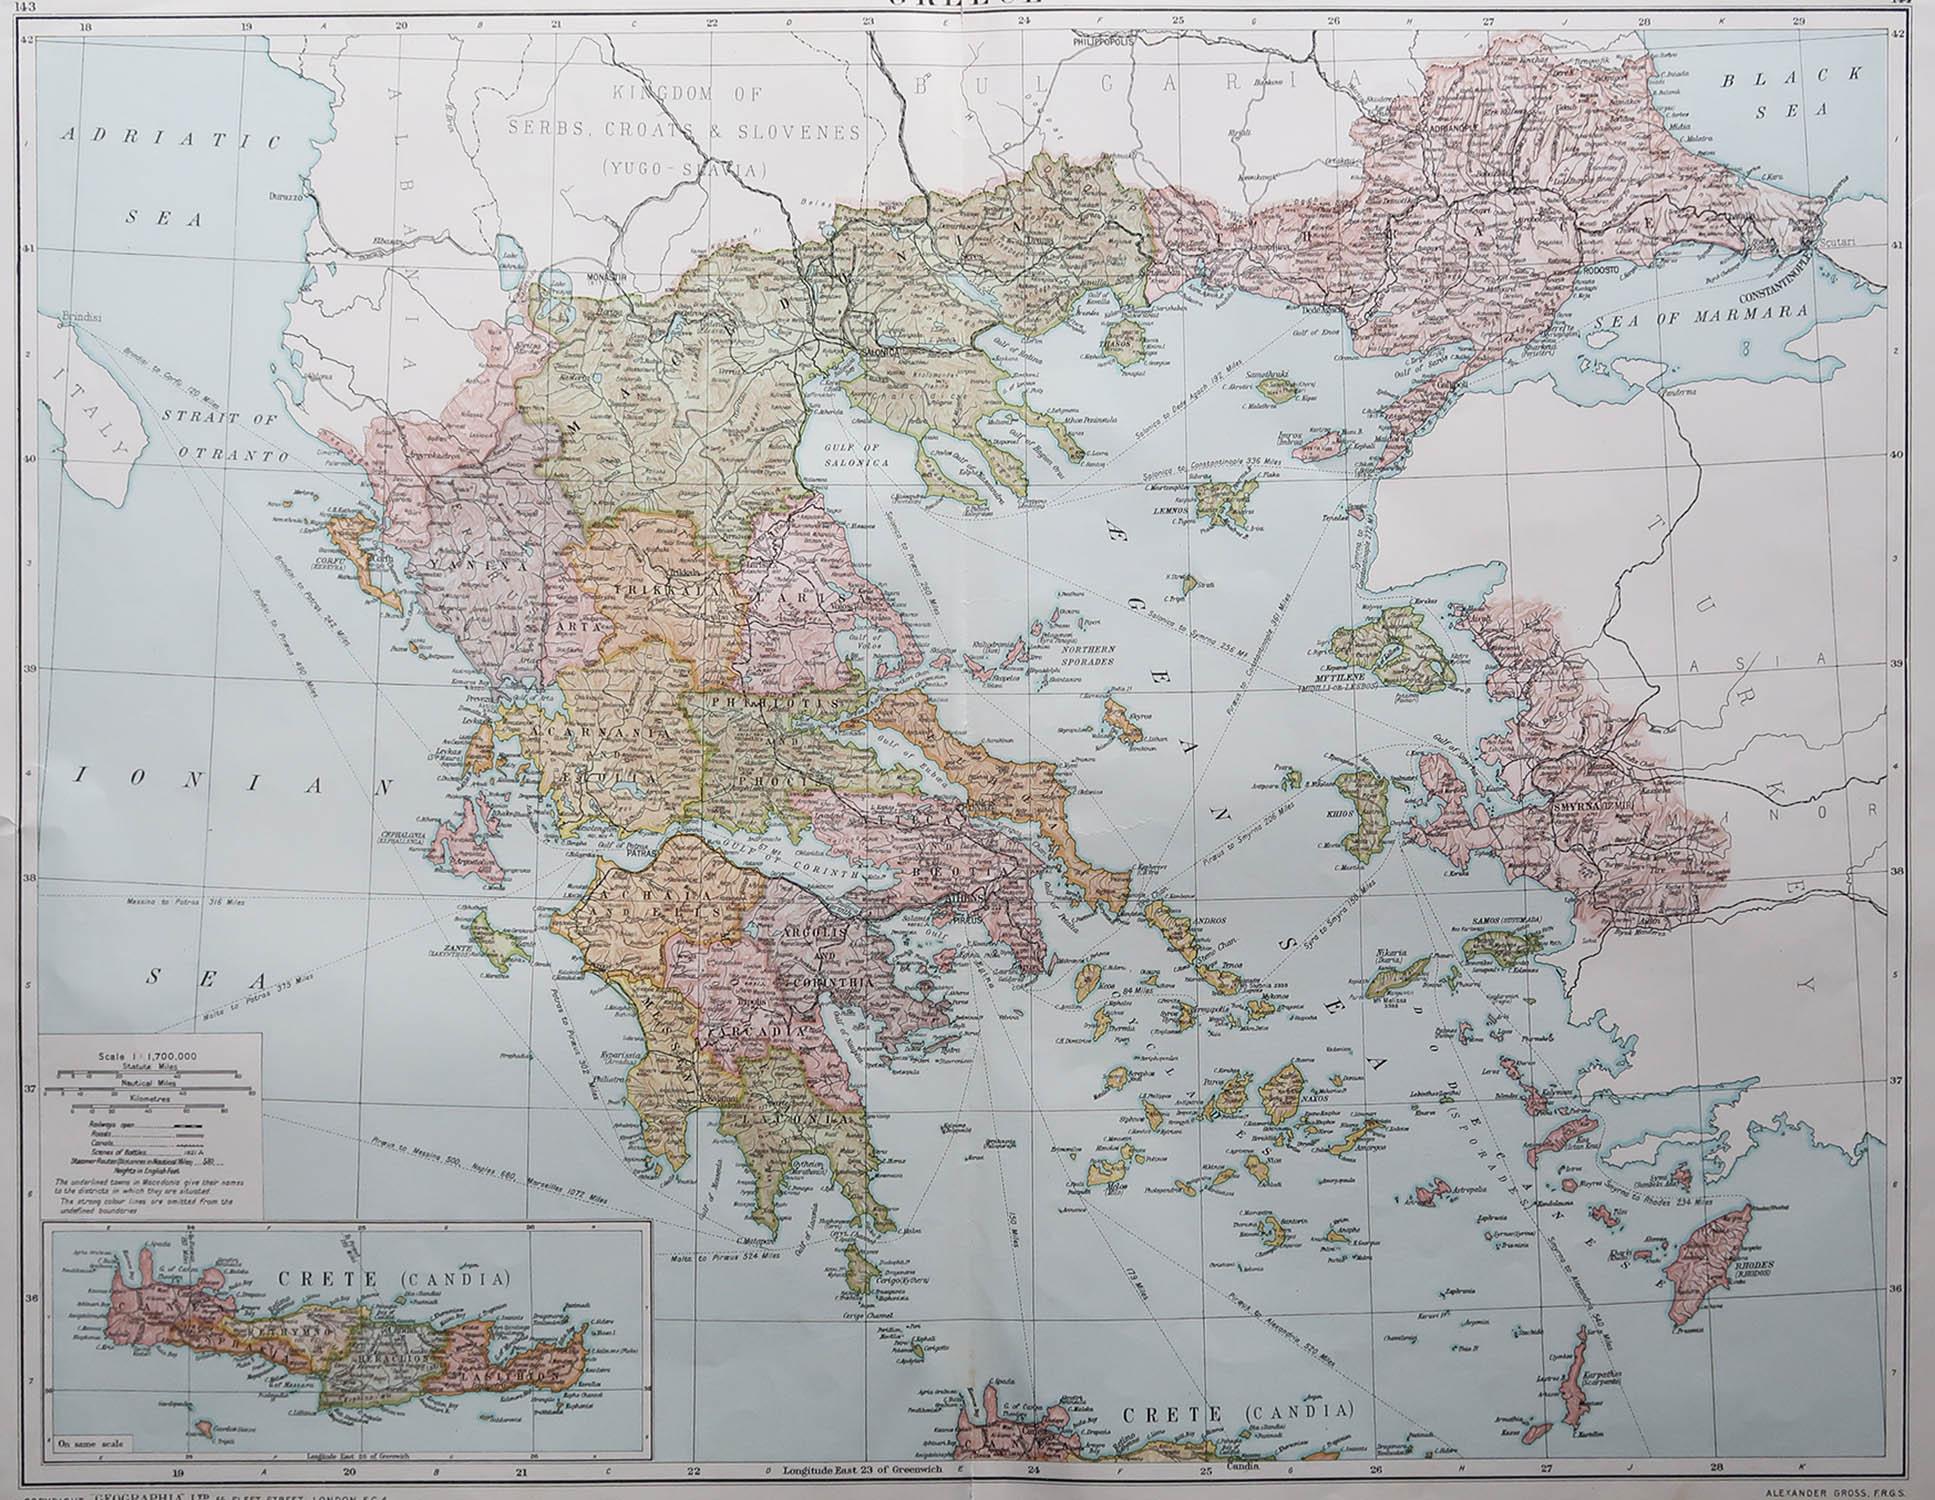 Grande carte de la Grèce

Couleur originale.

Bon état 

Publié par Alexander Gross

Non encadré.








